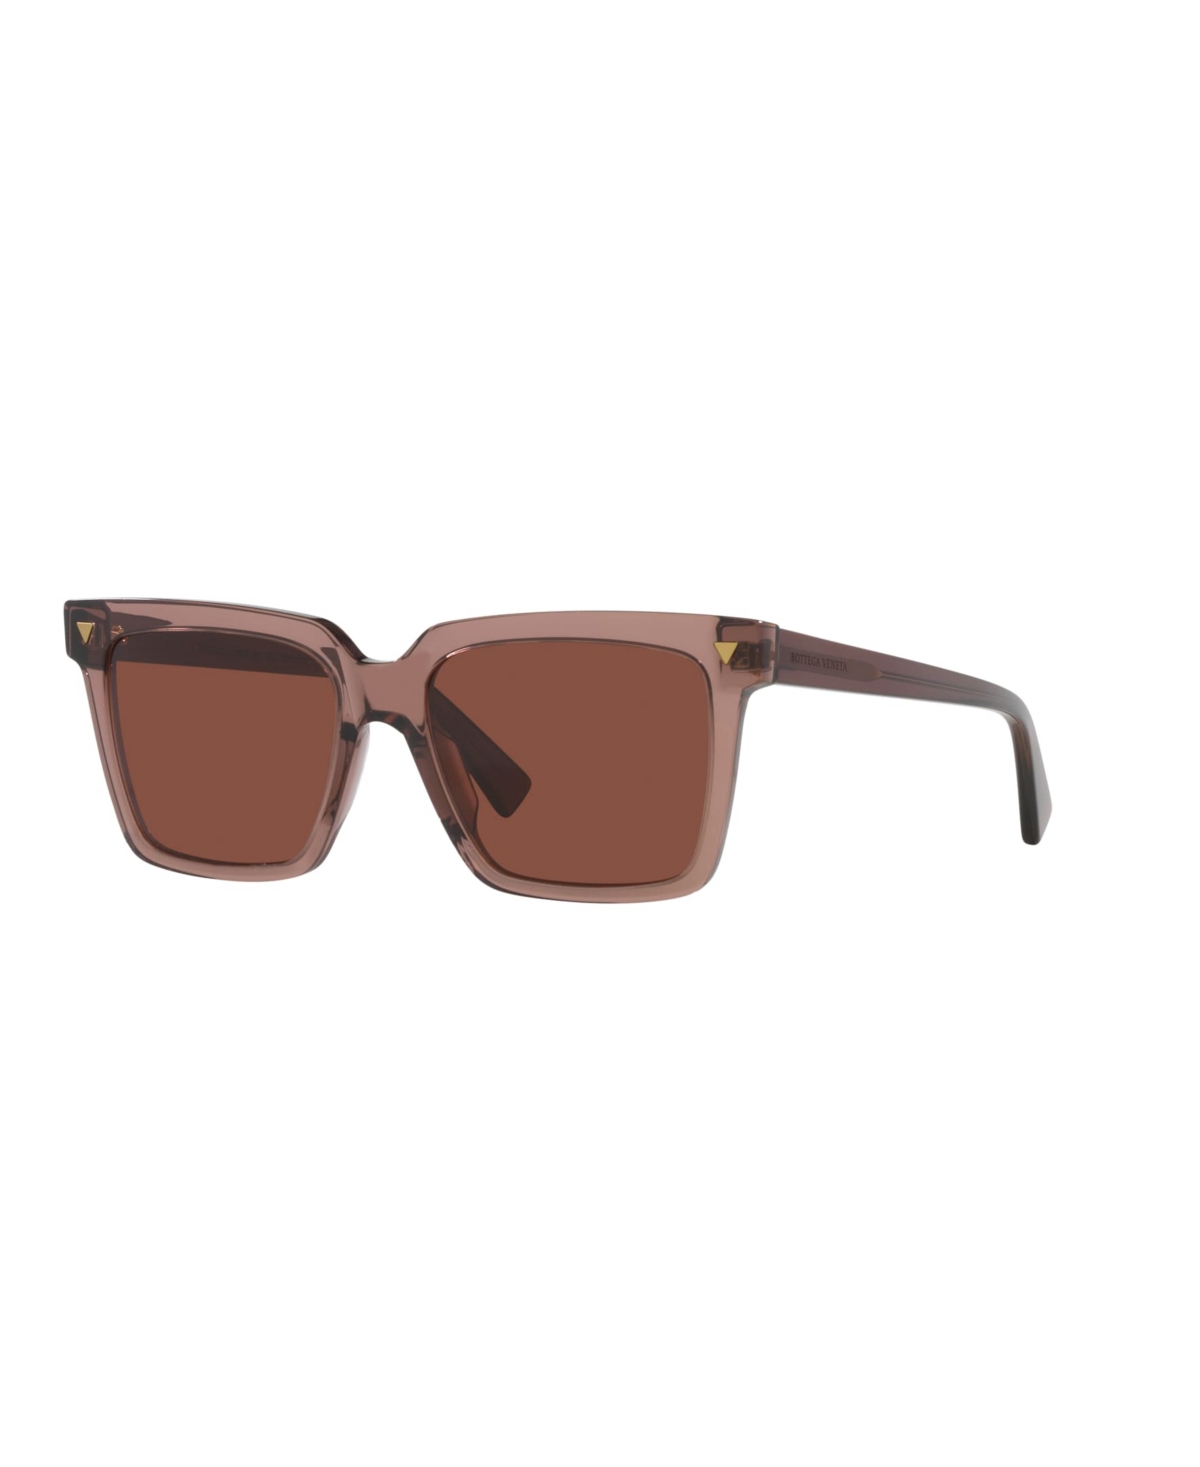 Bottega Veneta Women's Sunglasses, Bv1254s In Brown